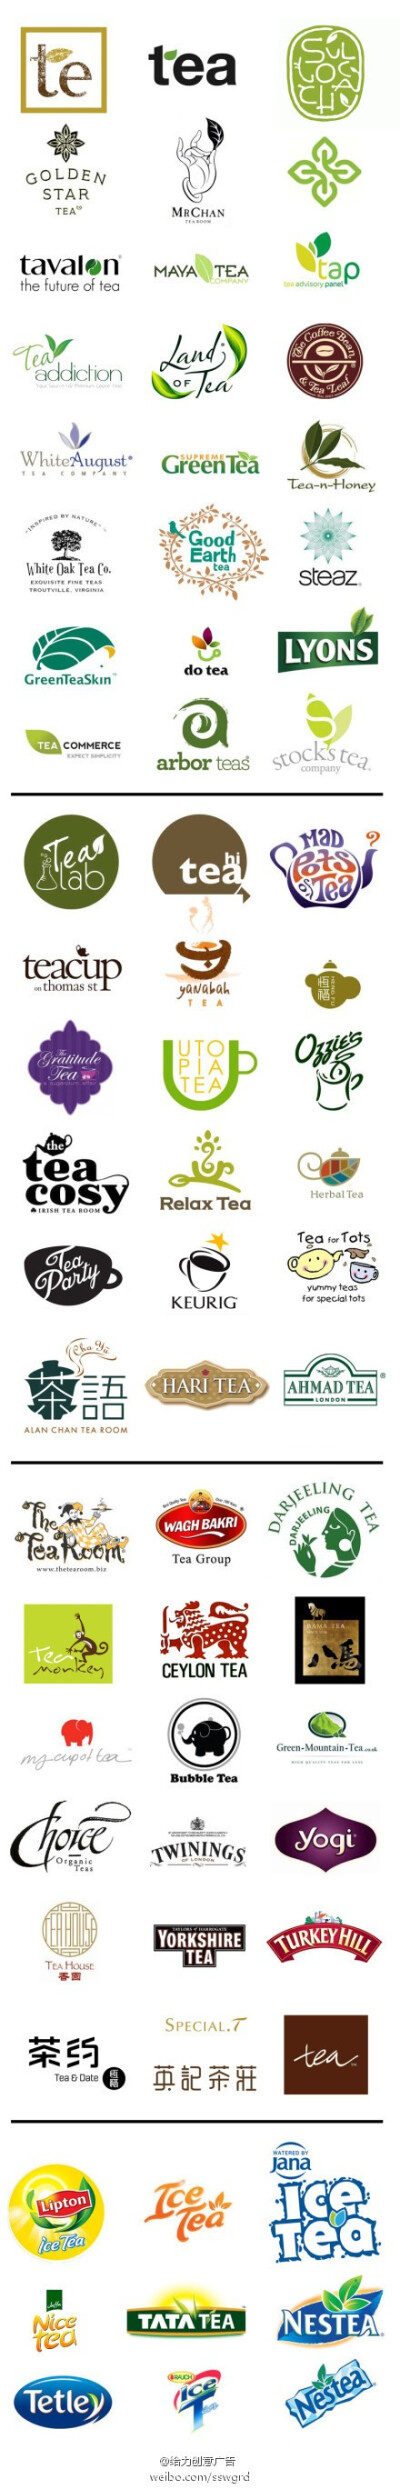 茶叶,茶企,茶饮料的品牌logo设计